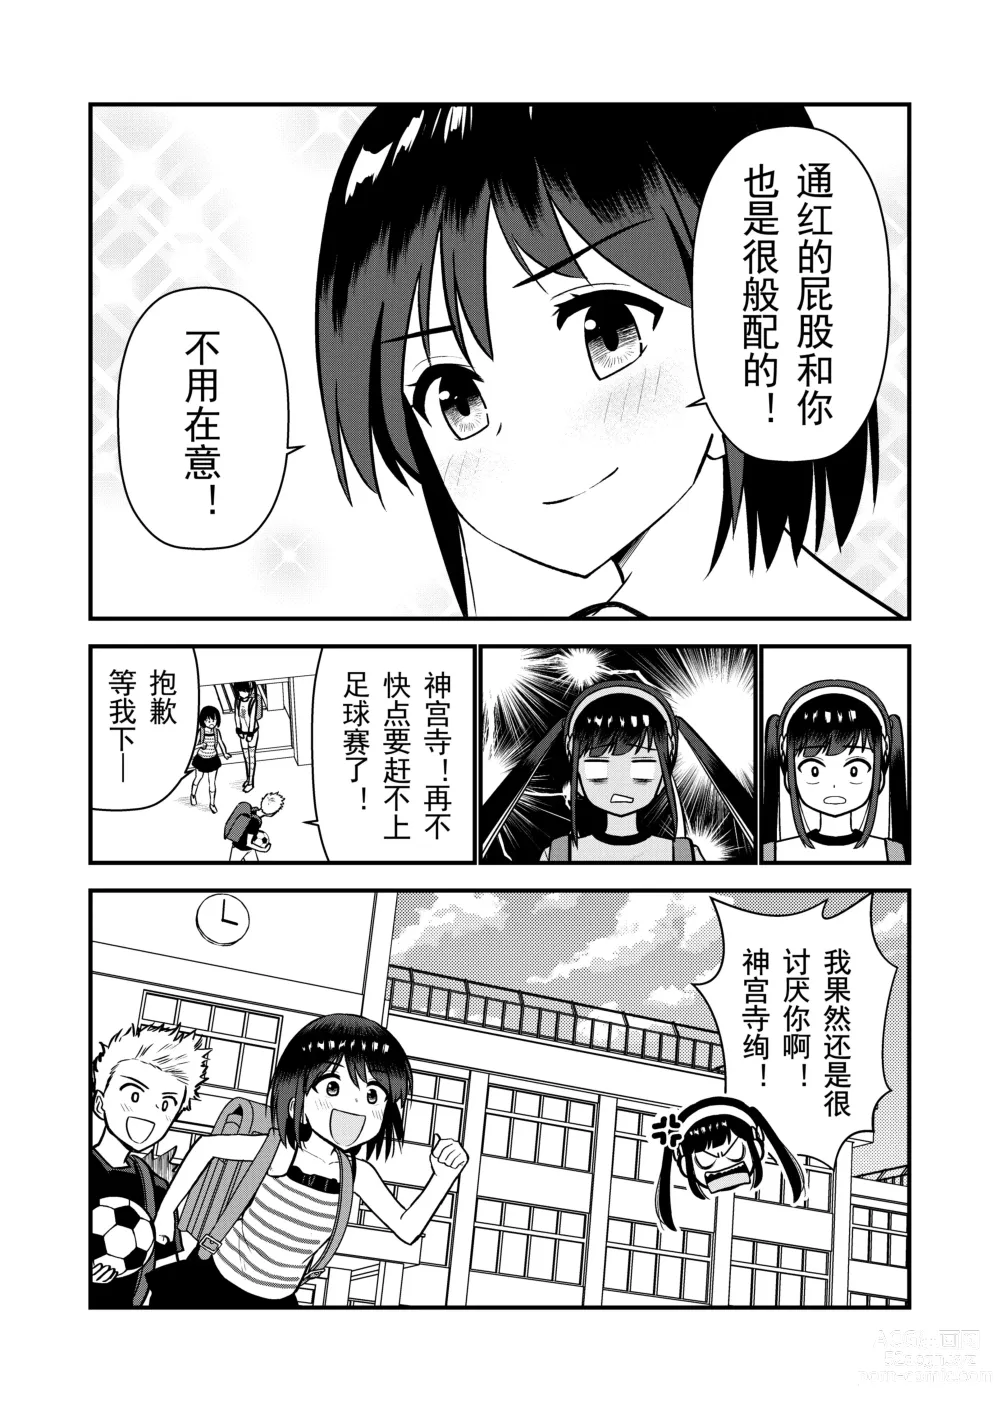 Page 74 of doujinshi 被惩罚后的当天,下半身禁止穿衣服的学校